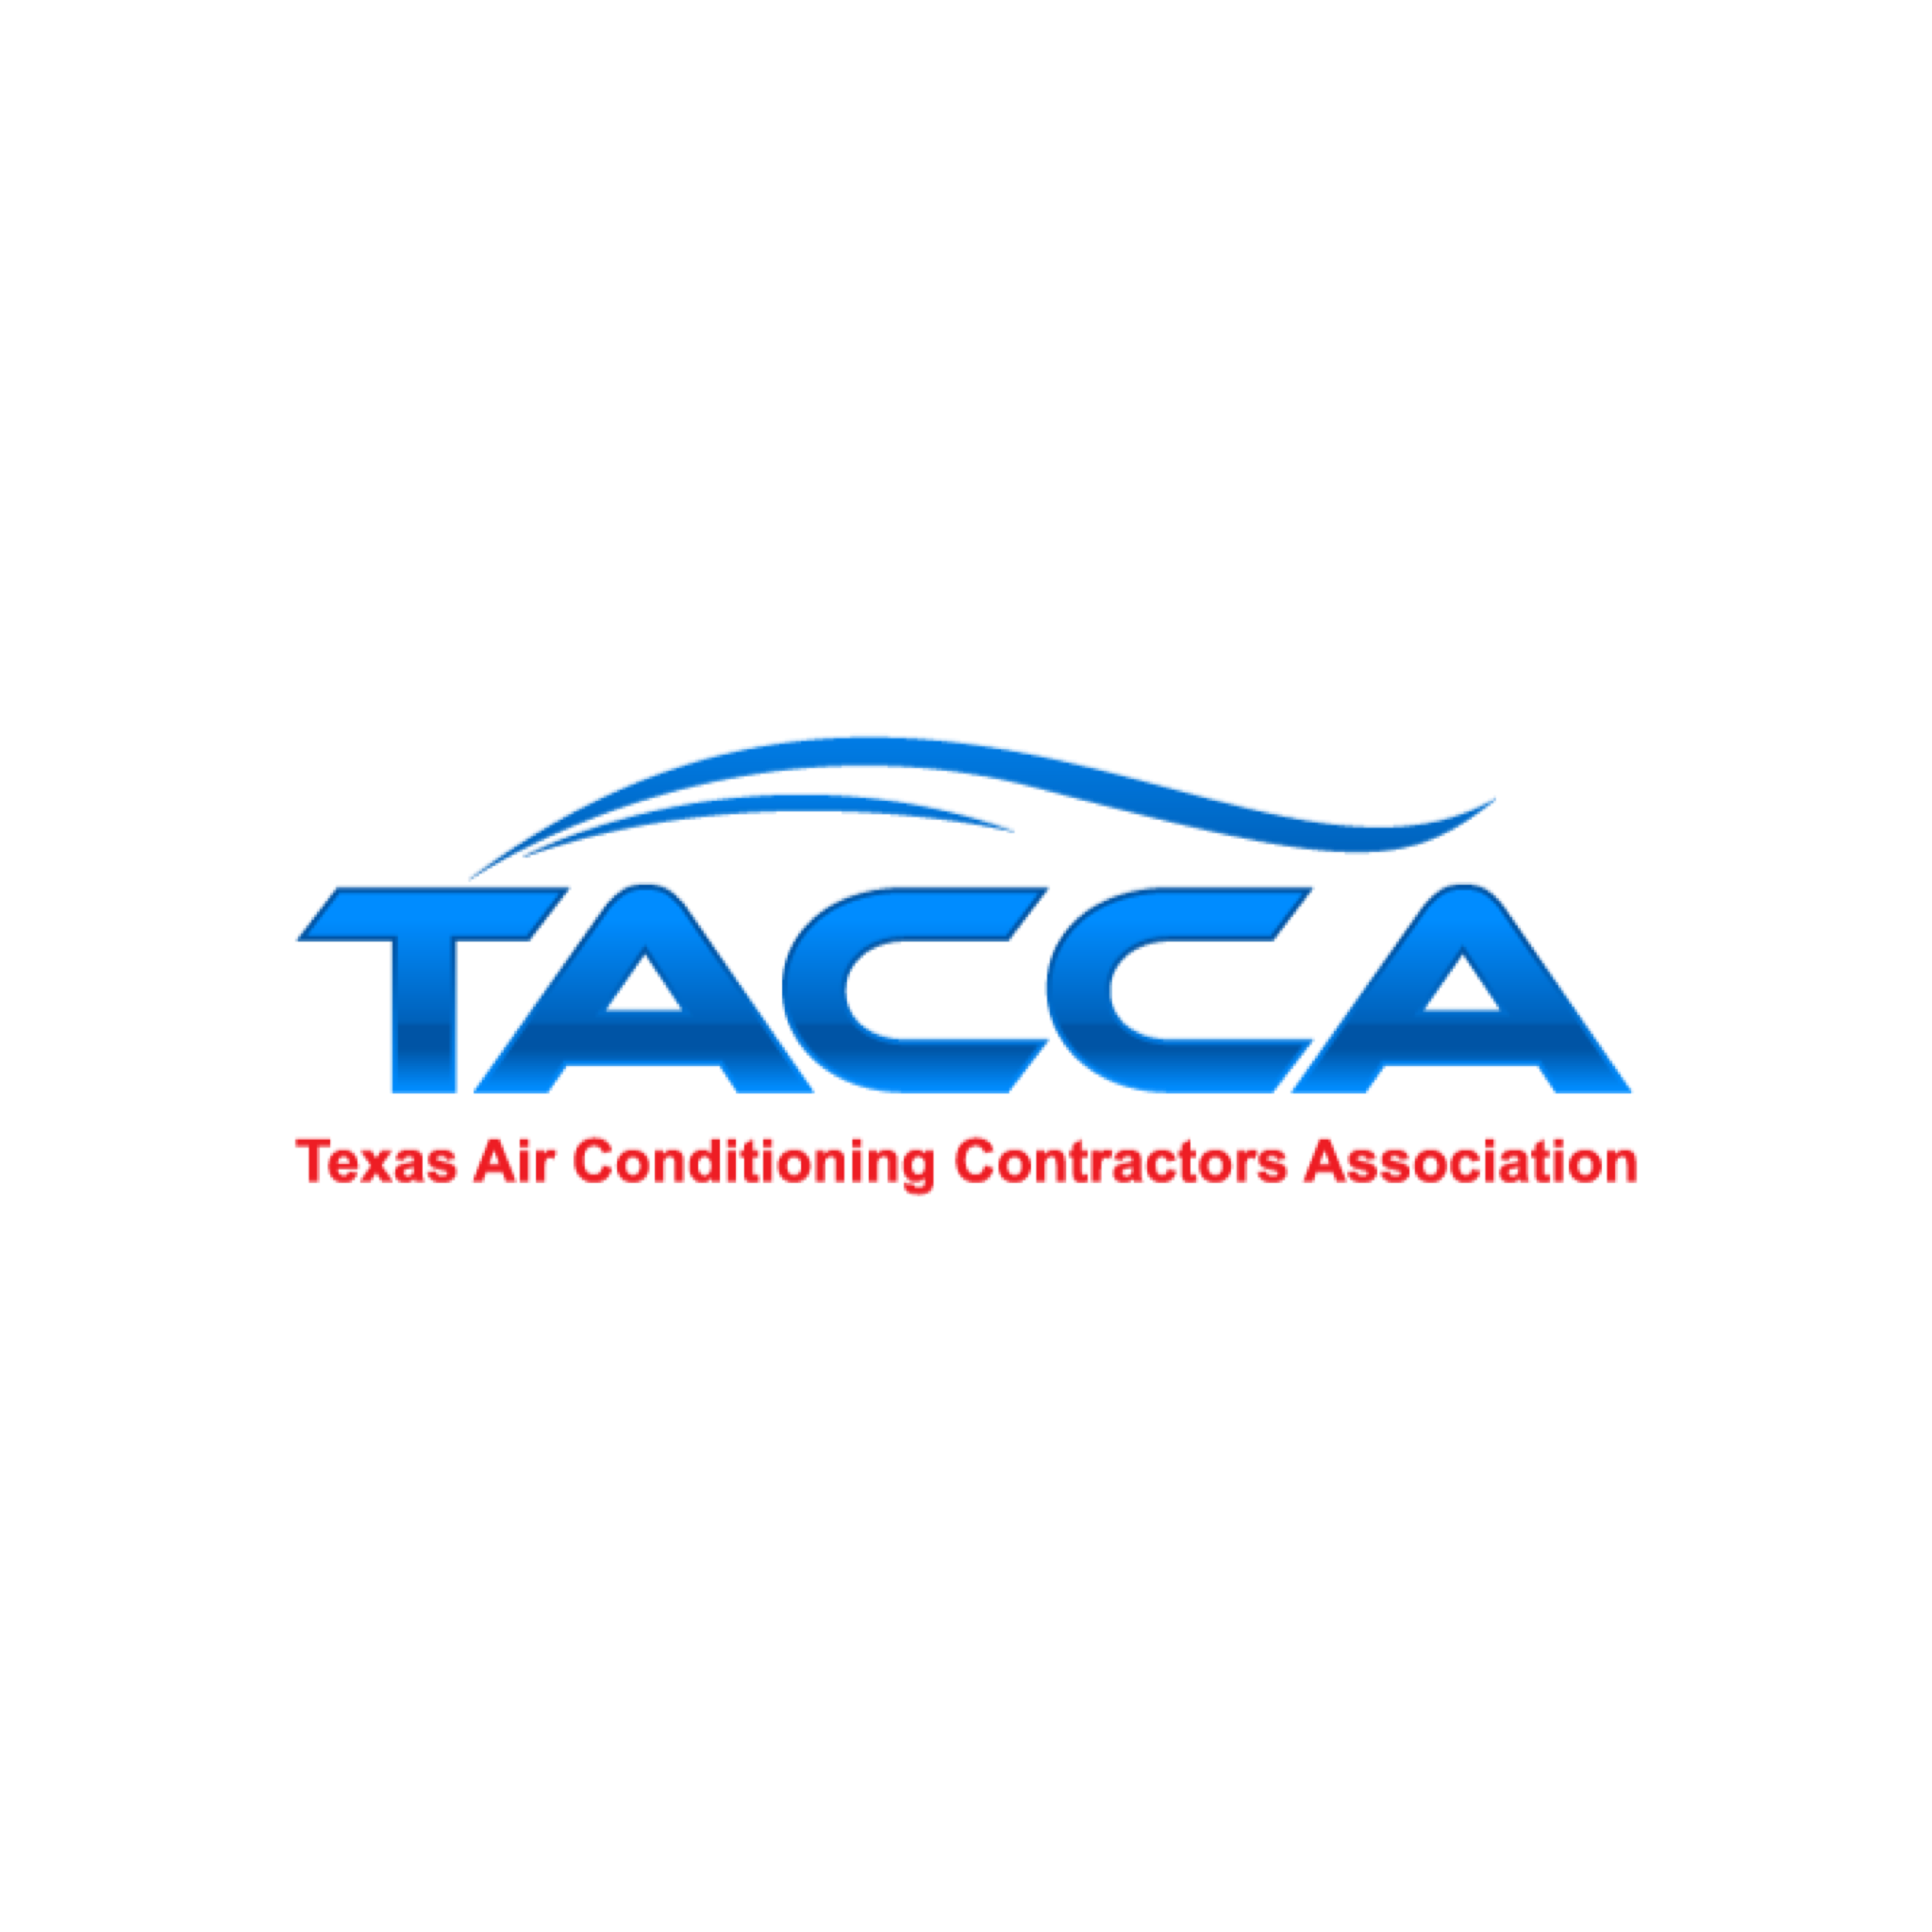 TACCA Partner Description Page